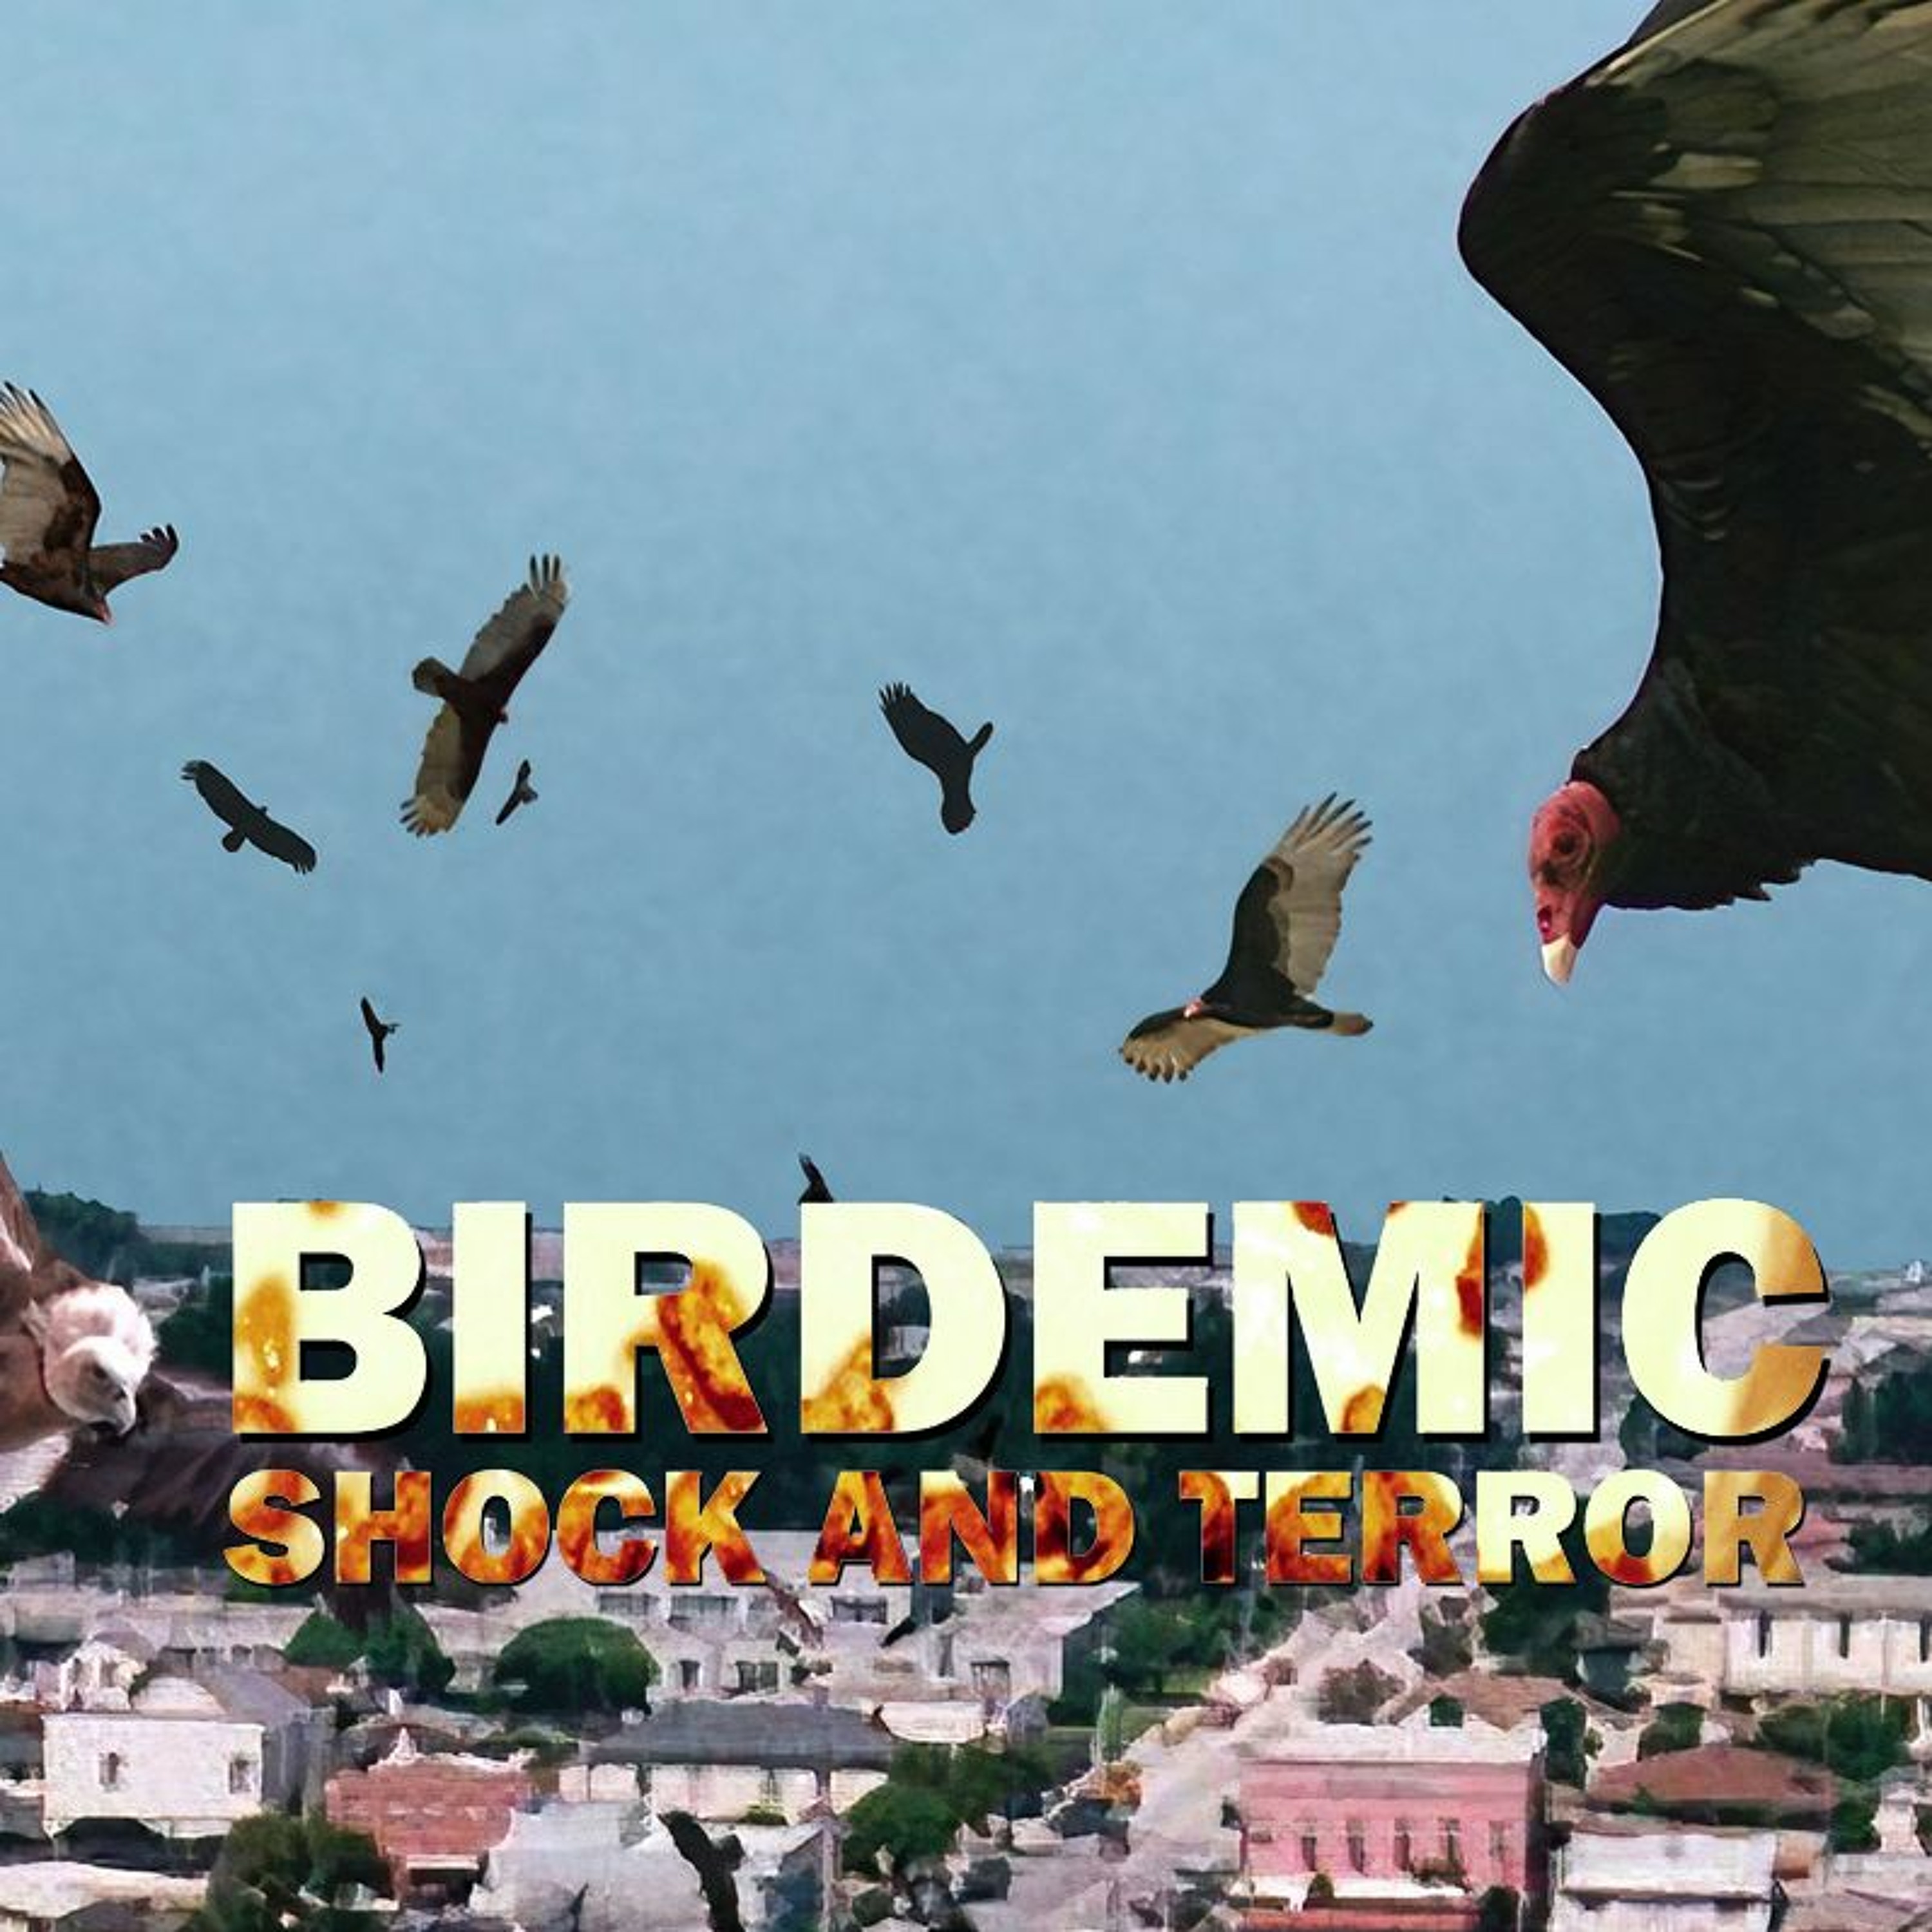 Birdemic: Shock and Terror (2010) - Spoilers! #481